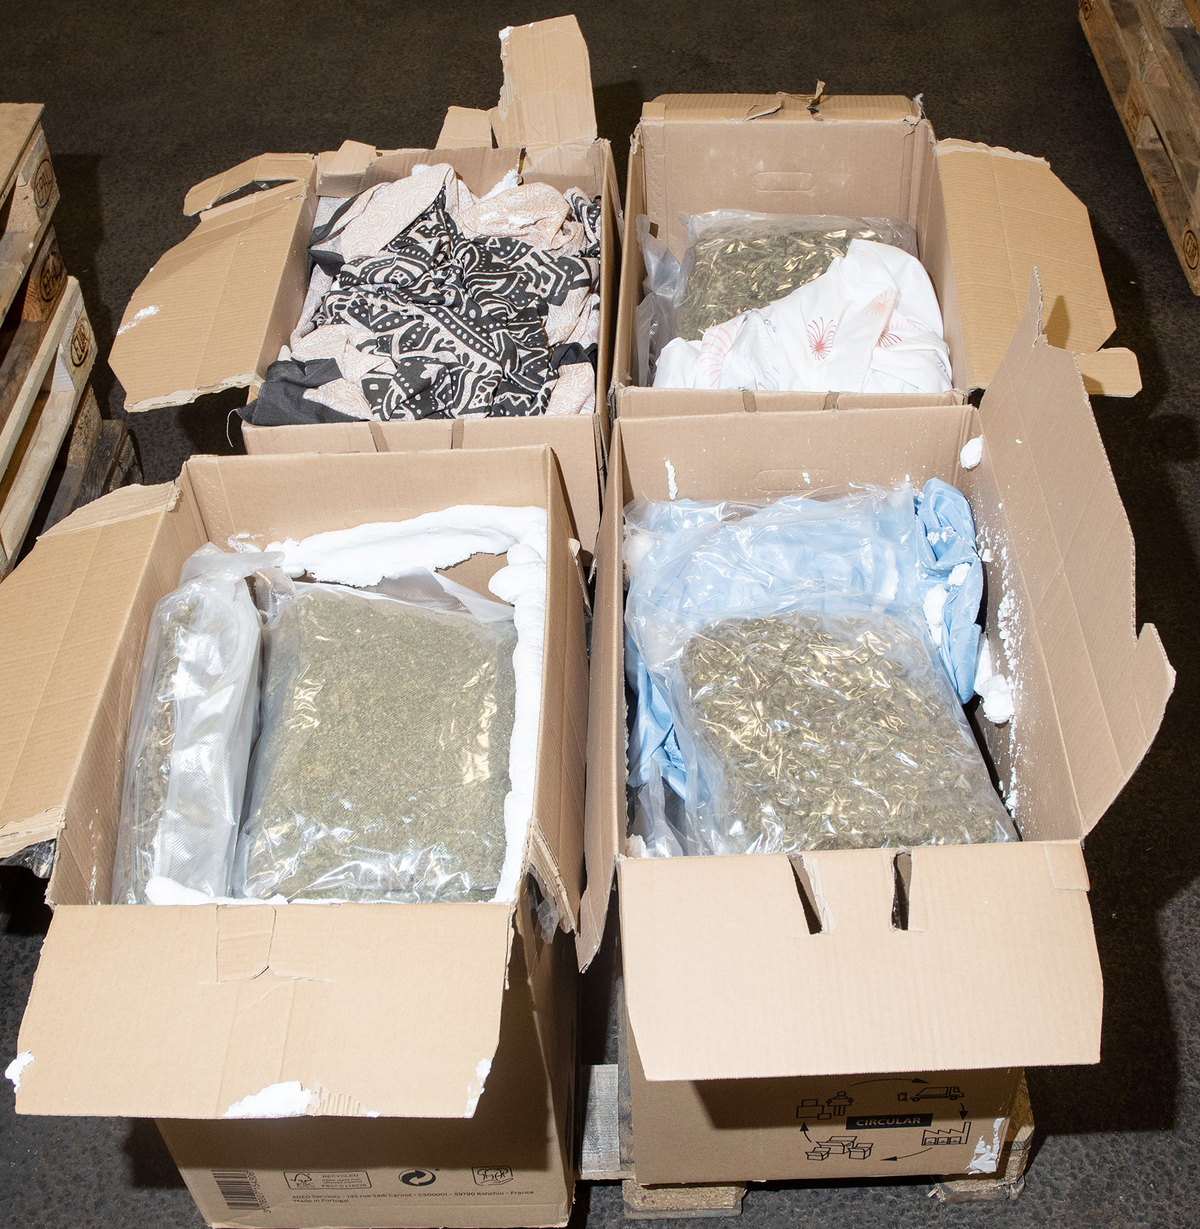 Narkotikan kvitterades ut av en av de misstänkta och paketen kördes till ödsliga platser i Göteborg. Där hämtades paketen upp av andra misstänkta i ärendet.